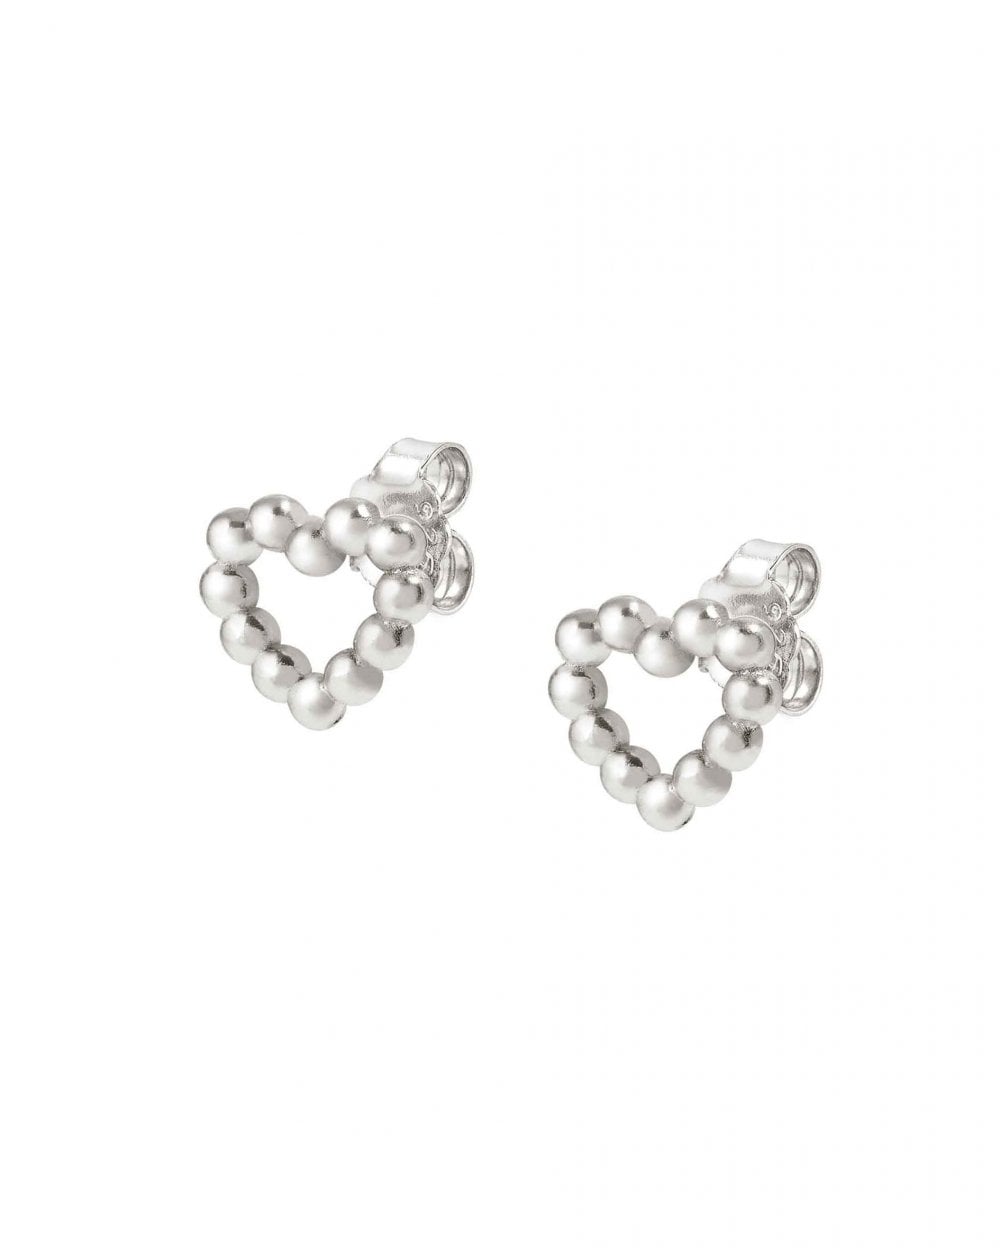 LOVECLOUD Earrings, Silver Heart